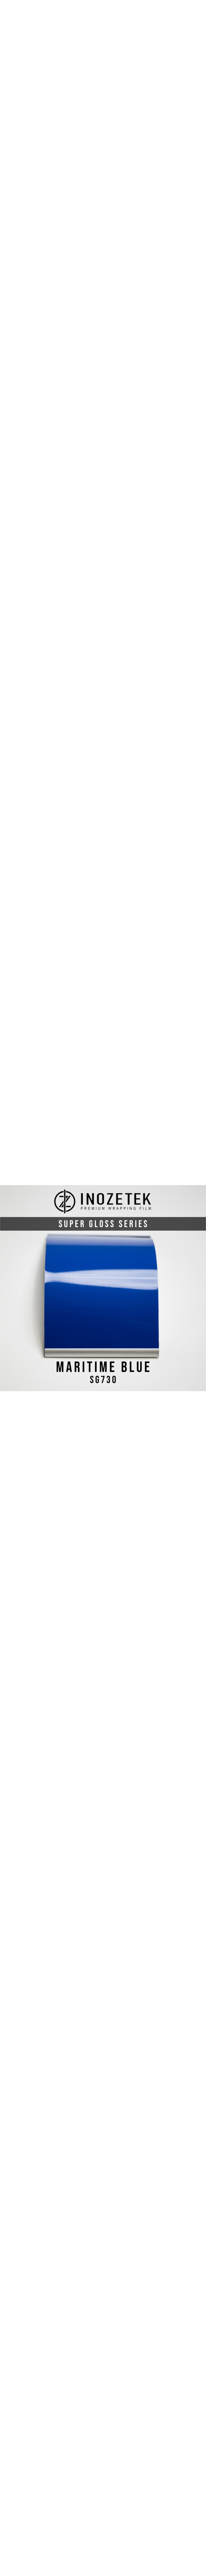 SG730 INOZETEK SUPER GLOSS MARITIME BLUE en 1.52m